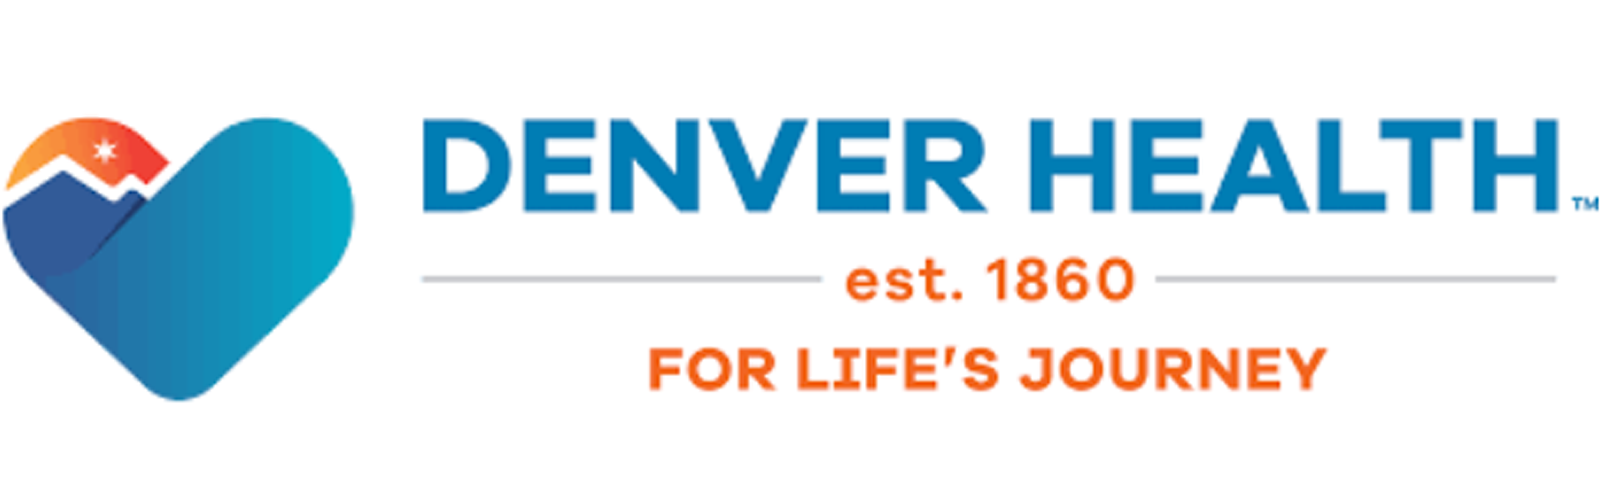 Insurance-Denver-Health